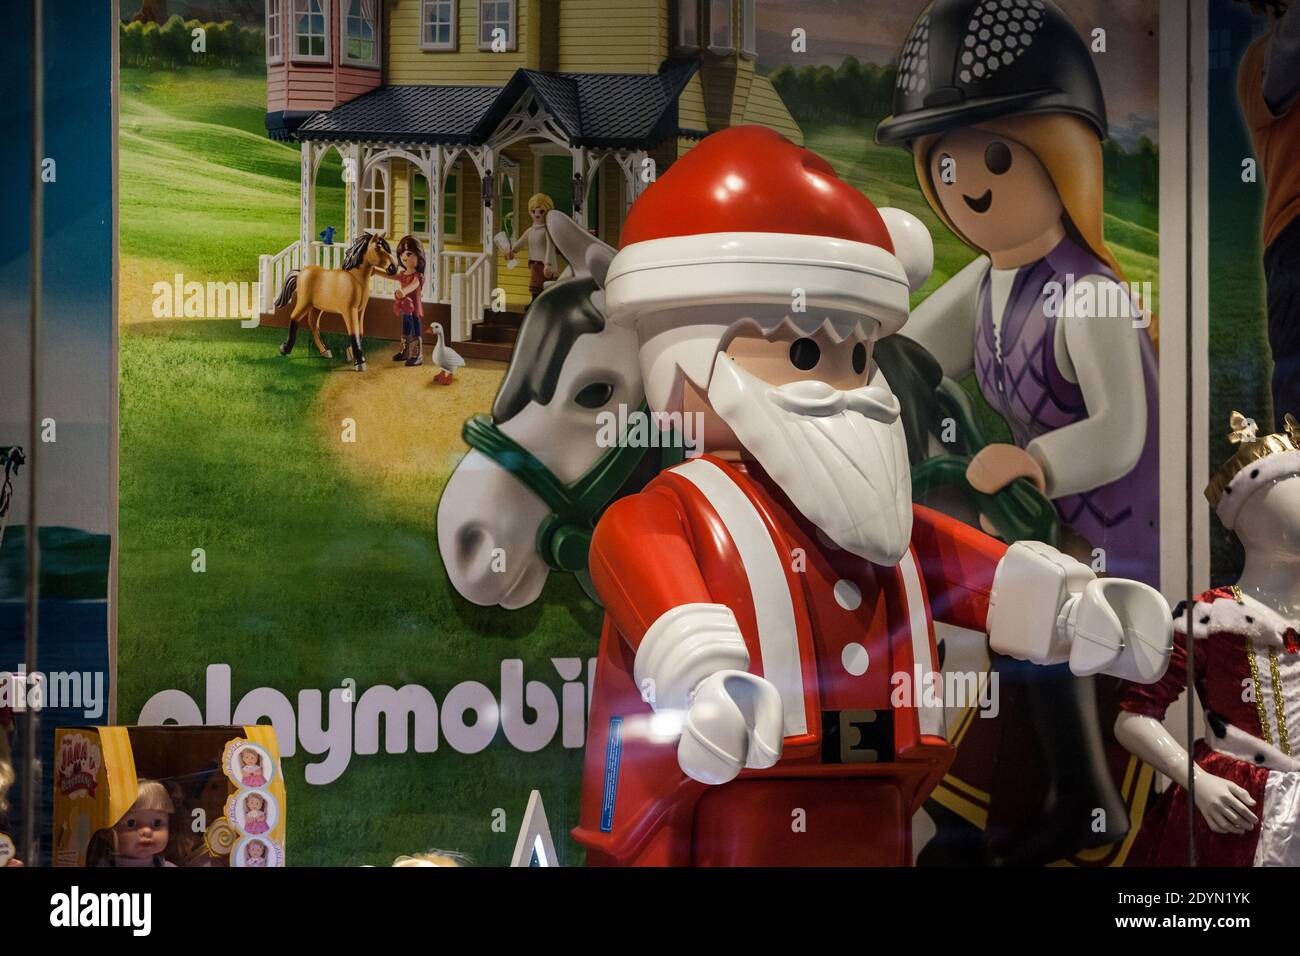 BELGRADO, SERBIA - 29 DE NOVIEMBRE de 2020: Logo de Playmobil frente a un  Gigante Navidad Santa Claus Figurita en exhibición frente a una tienda.  Playmobil es Fotografía de stock - Alamy